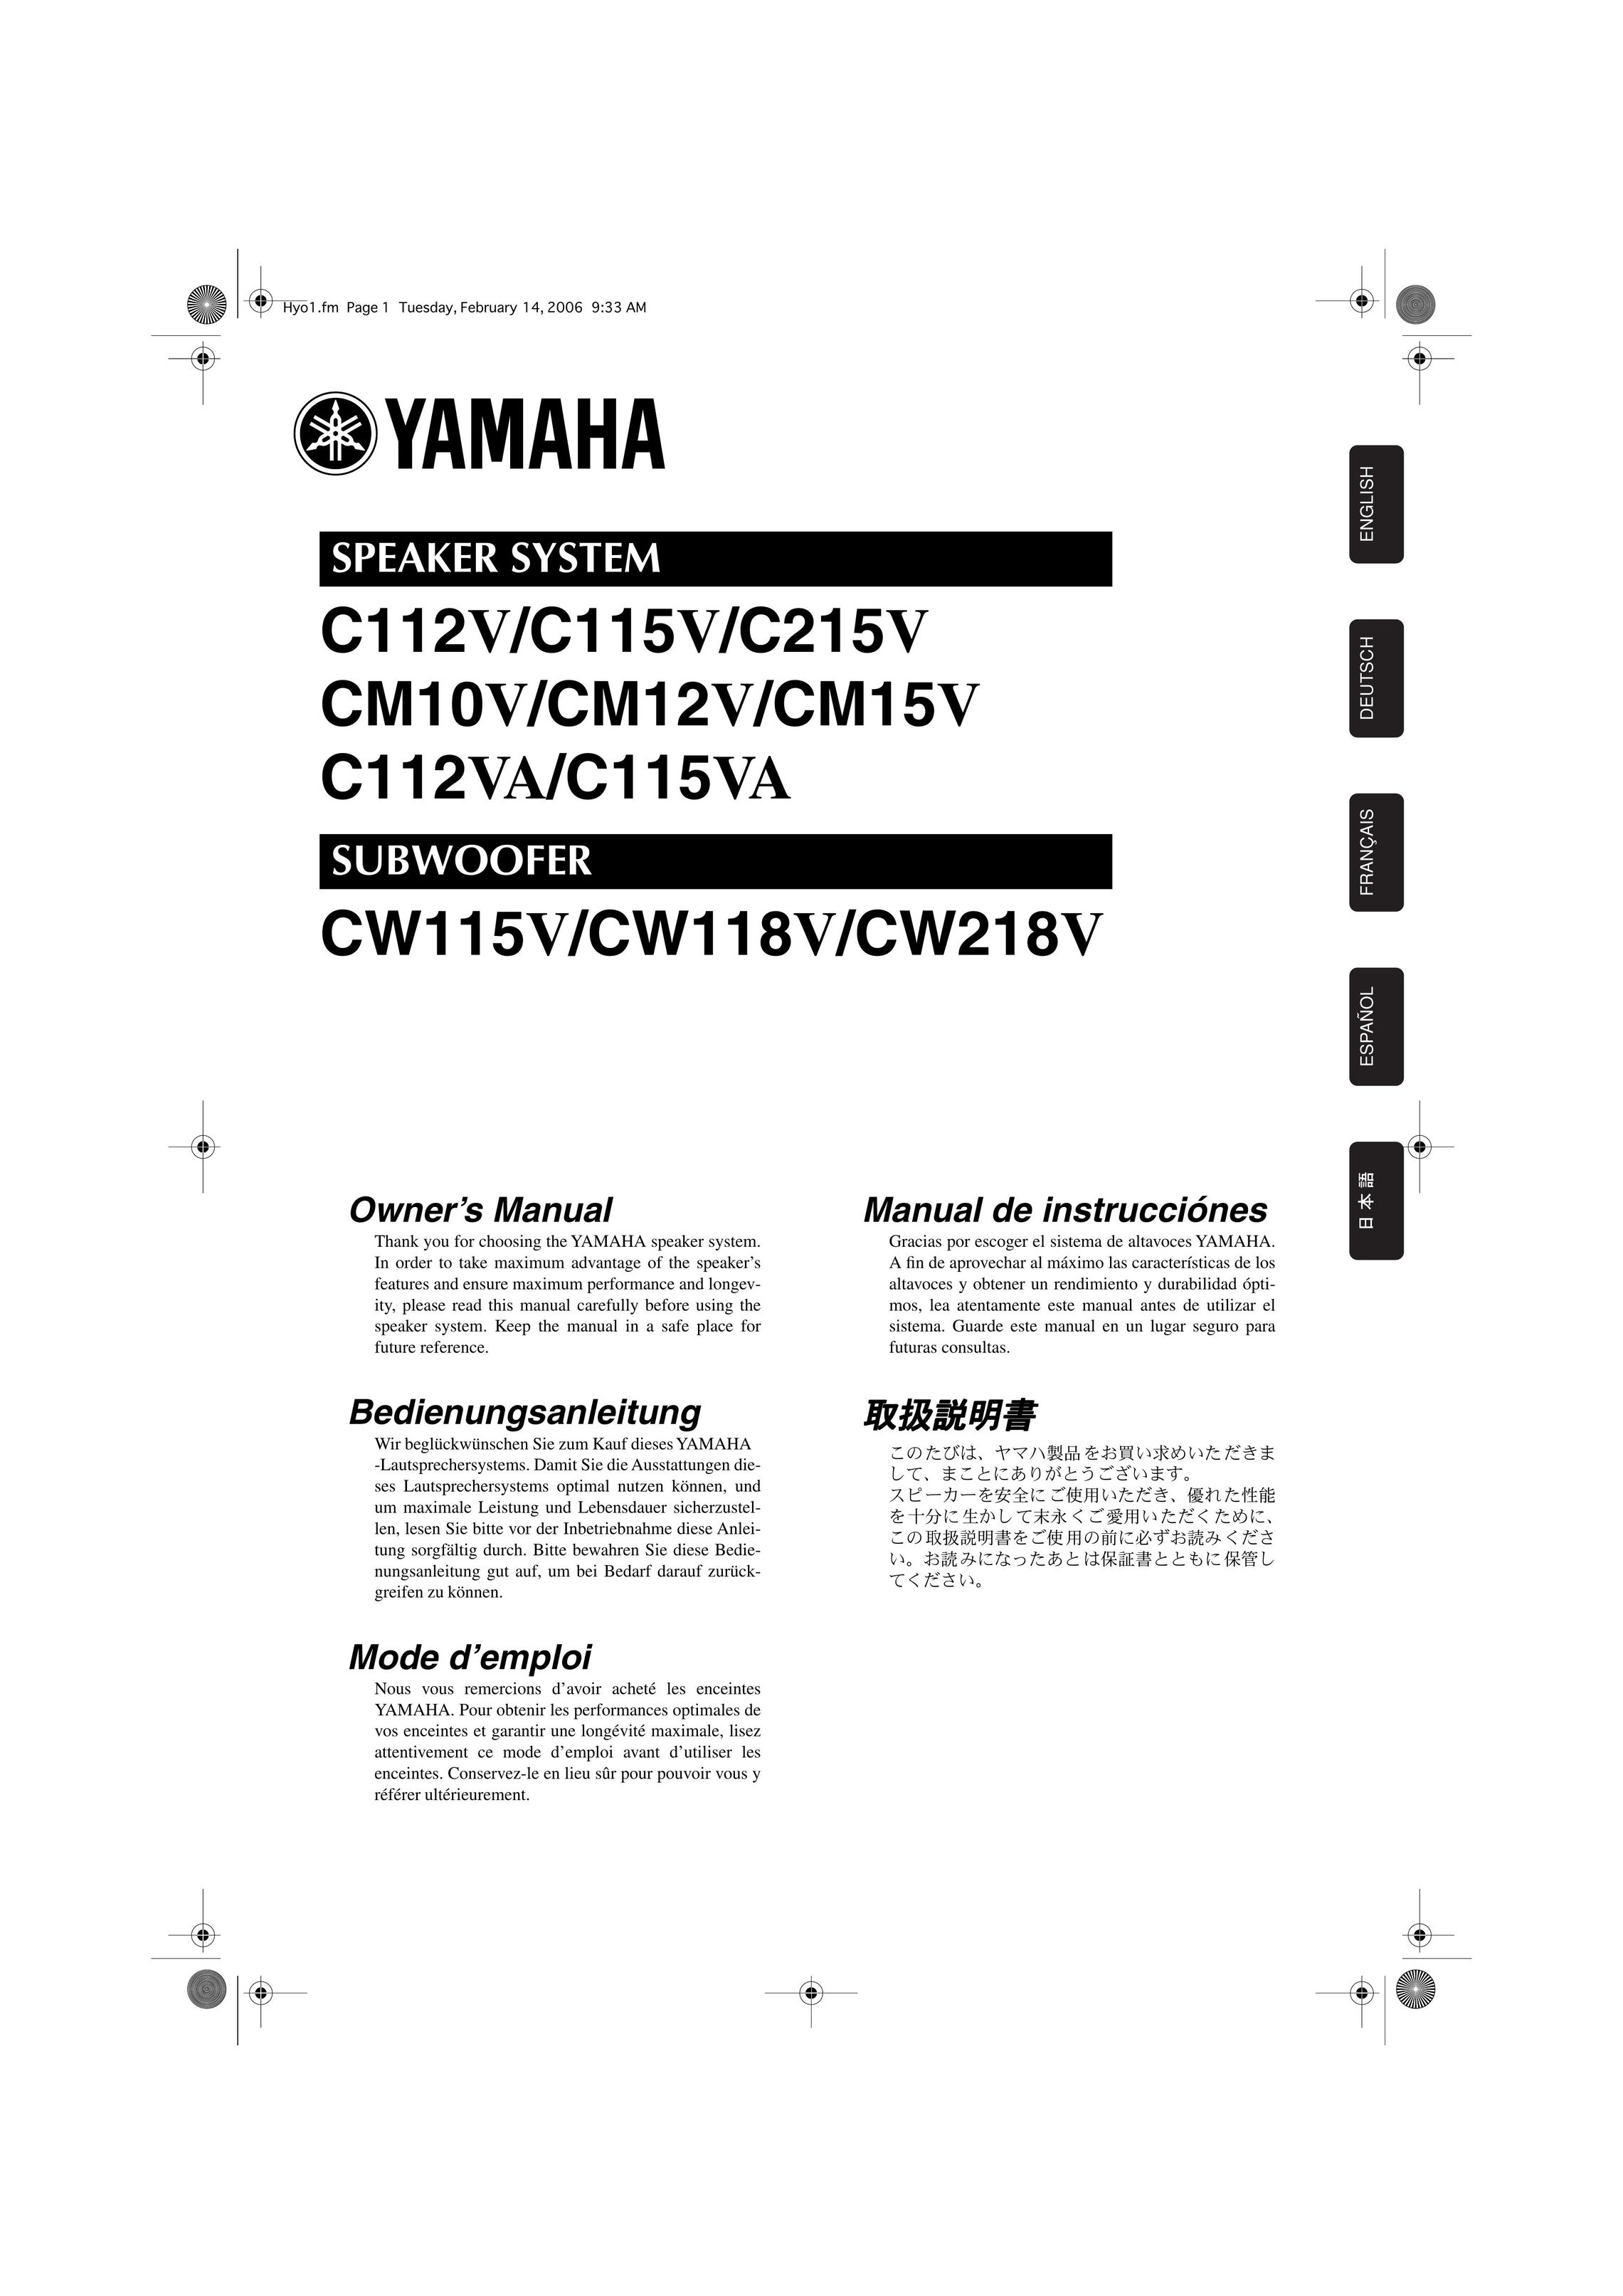 Yamaha CM10V Portable Speaker User Manual